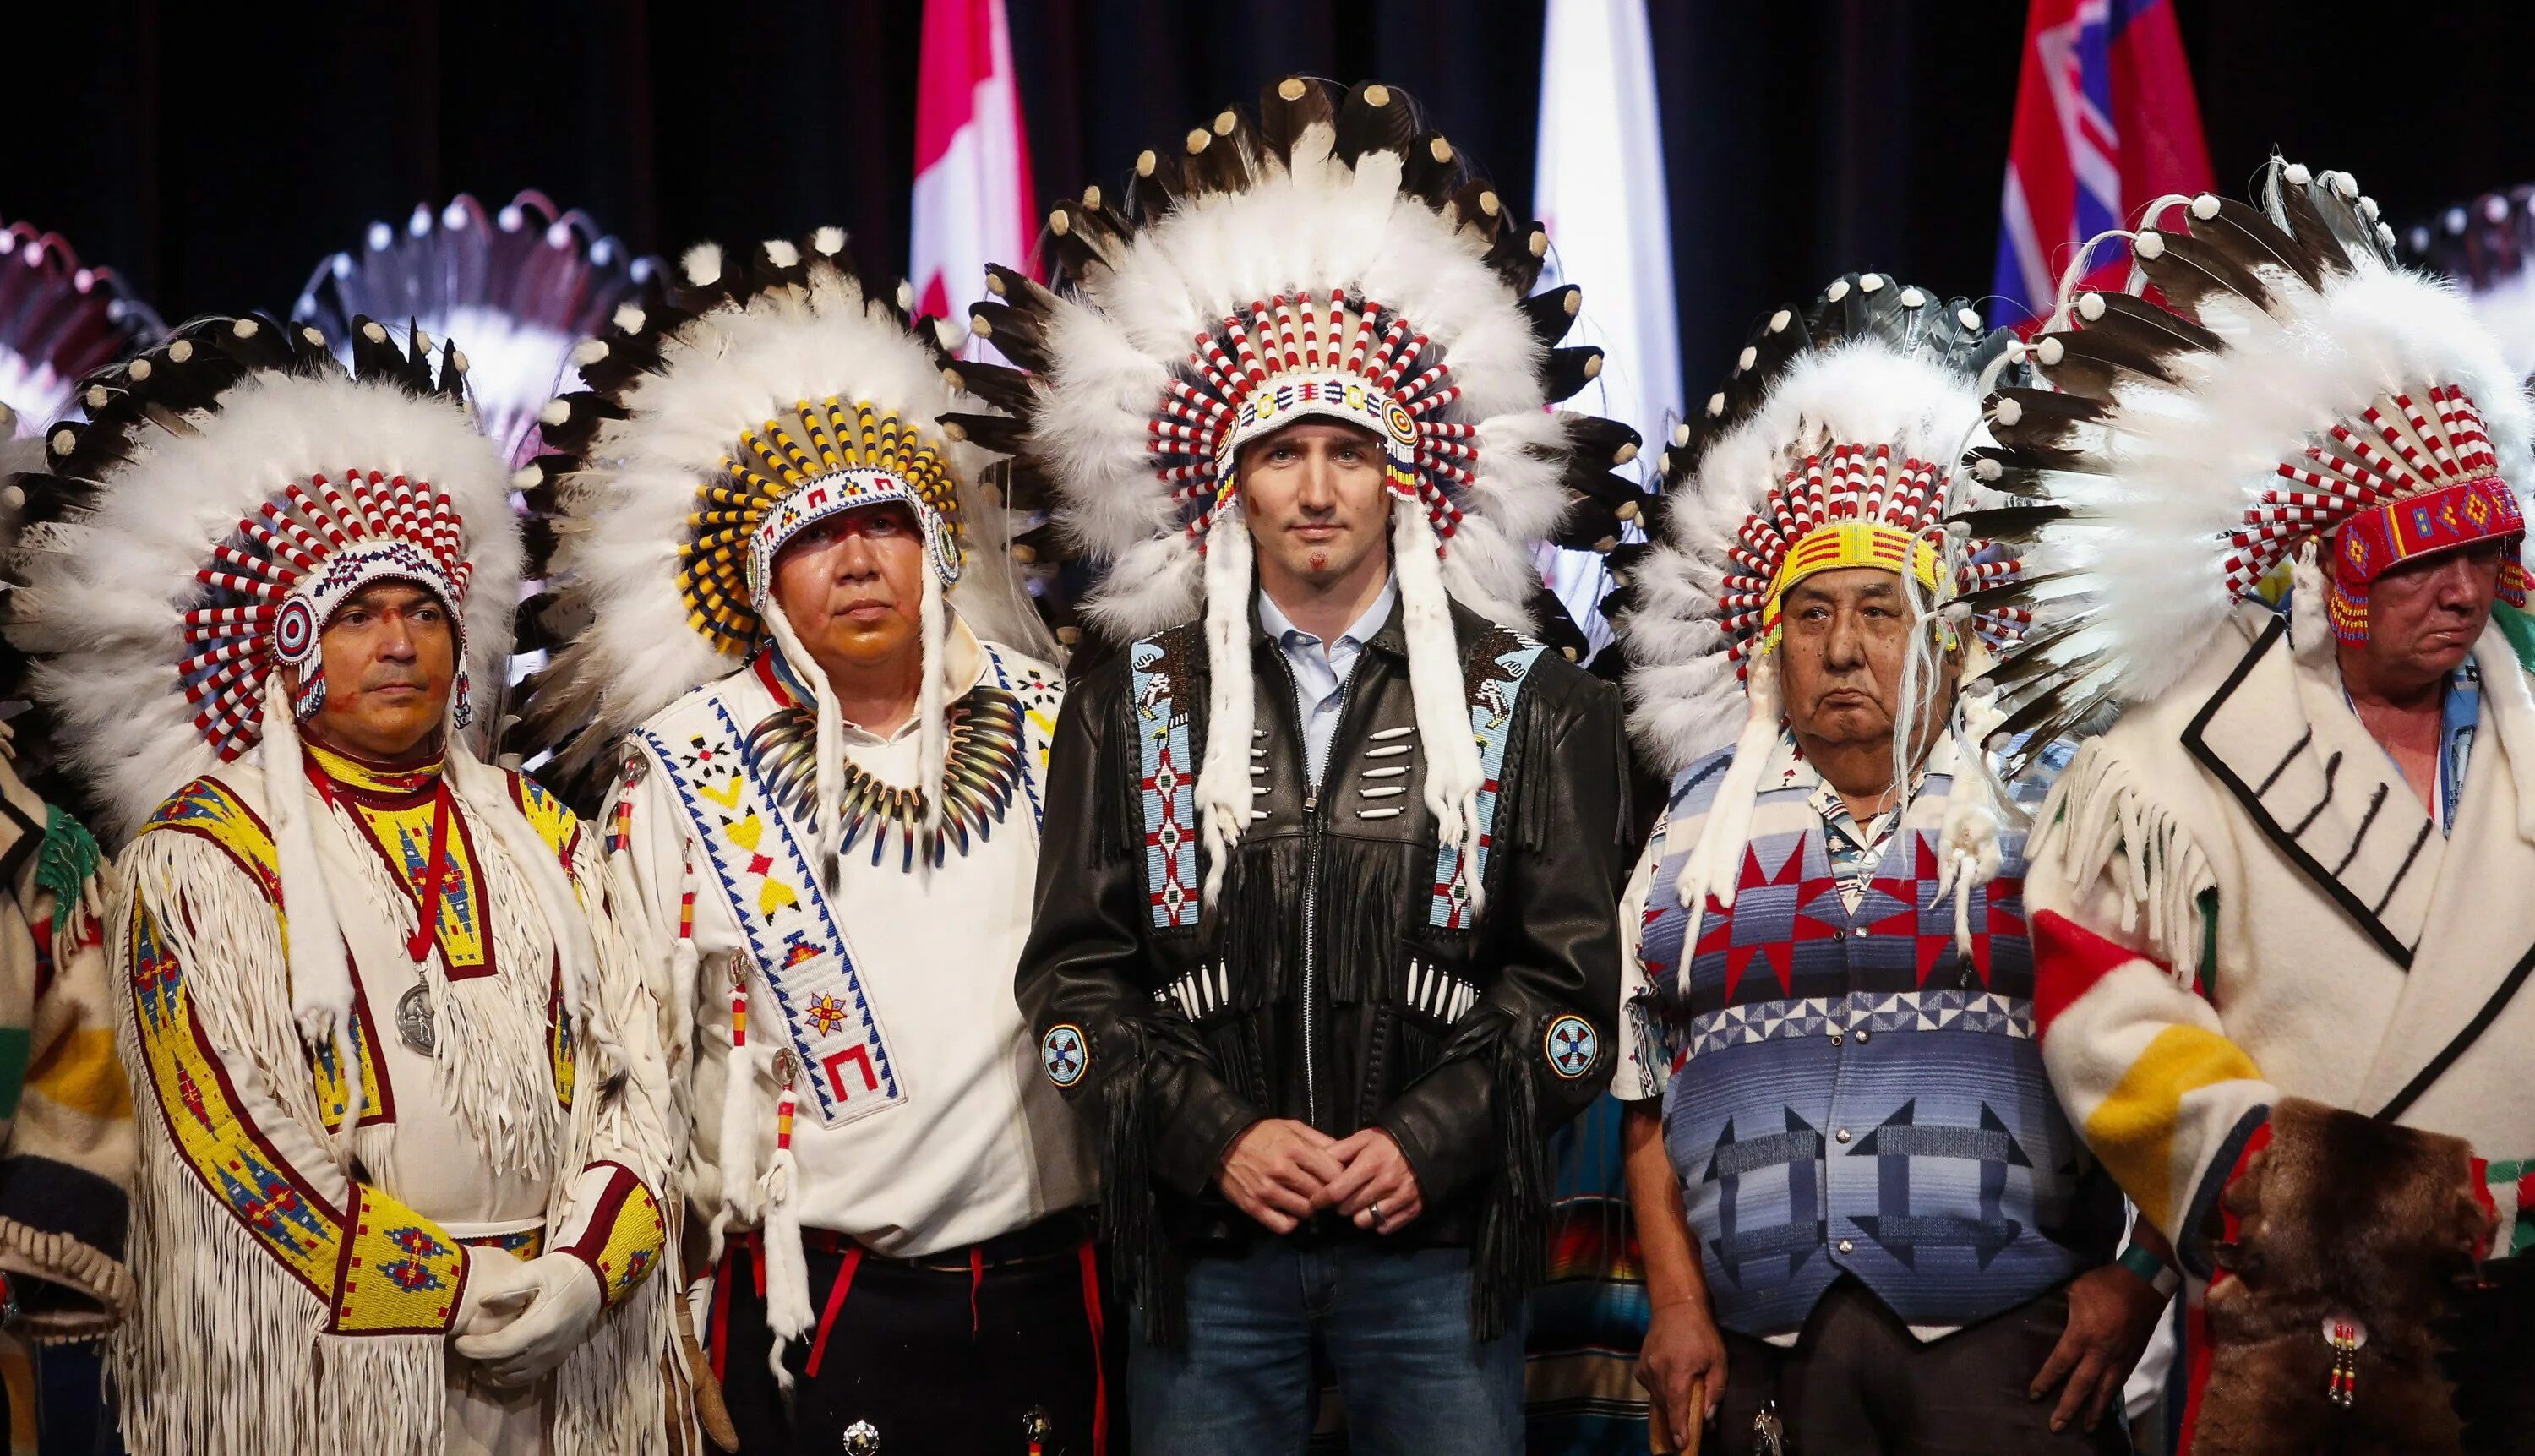 Индейцы Канады народы Канады. Канада индейцы алеуты. Северные индейцы Канады. Коренные жители Канады индейцы. Народы населяющие страну канады и их быт